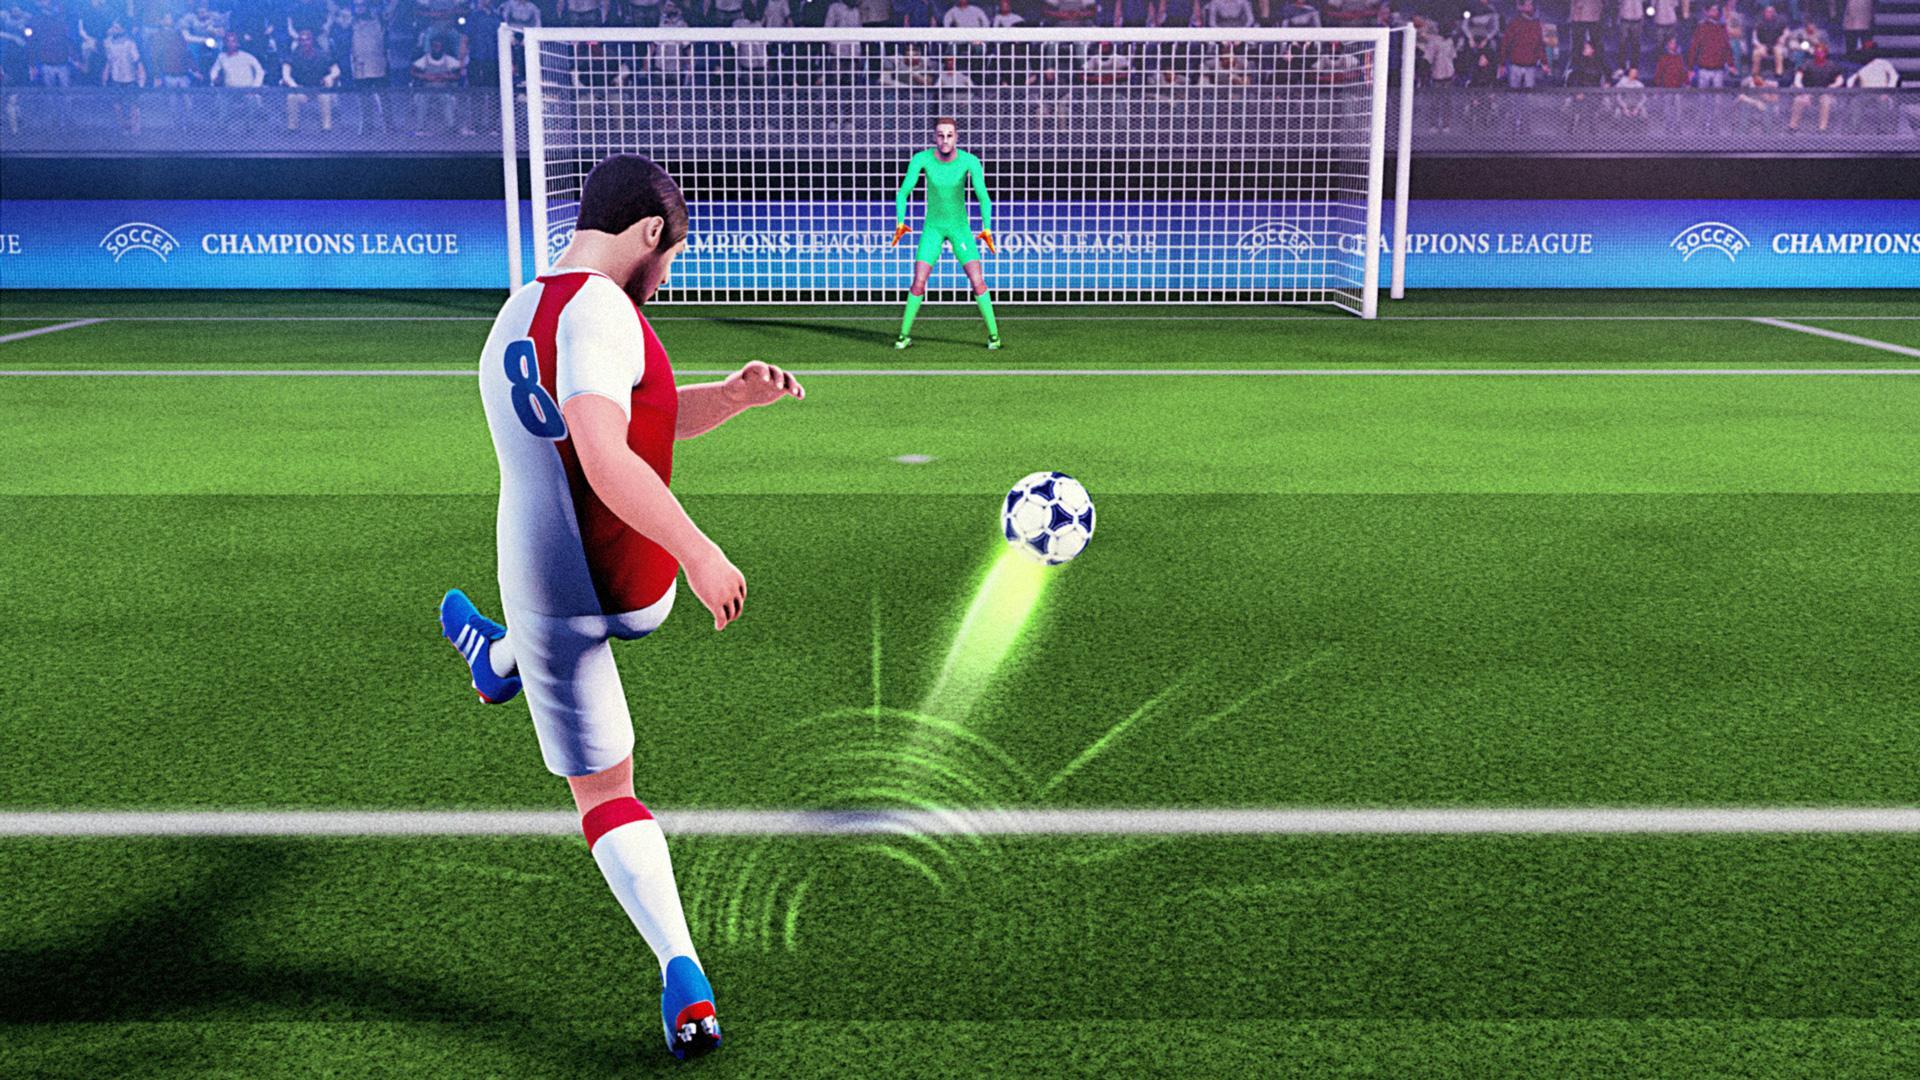 Champions FreeKick League 2018 screenshot game